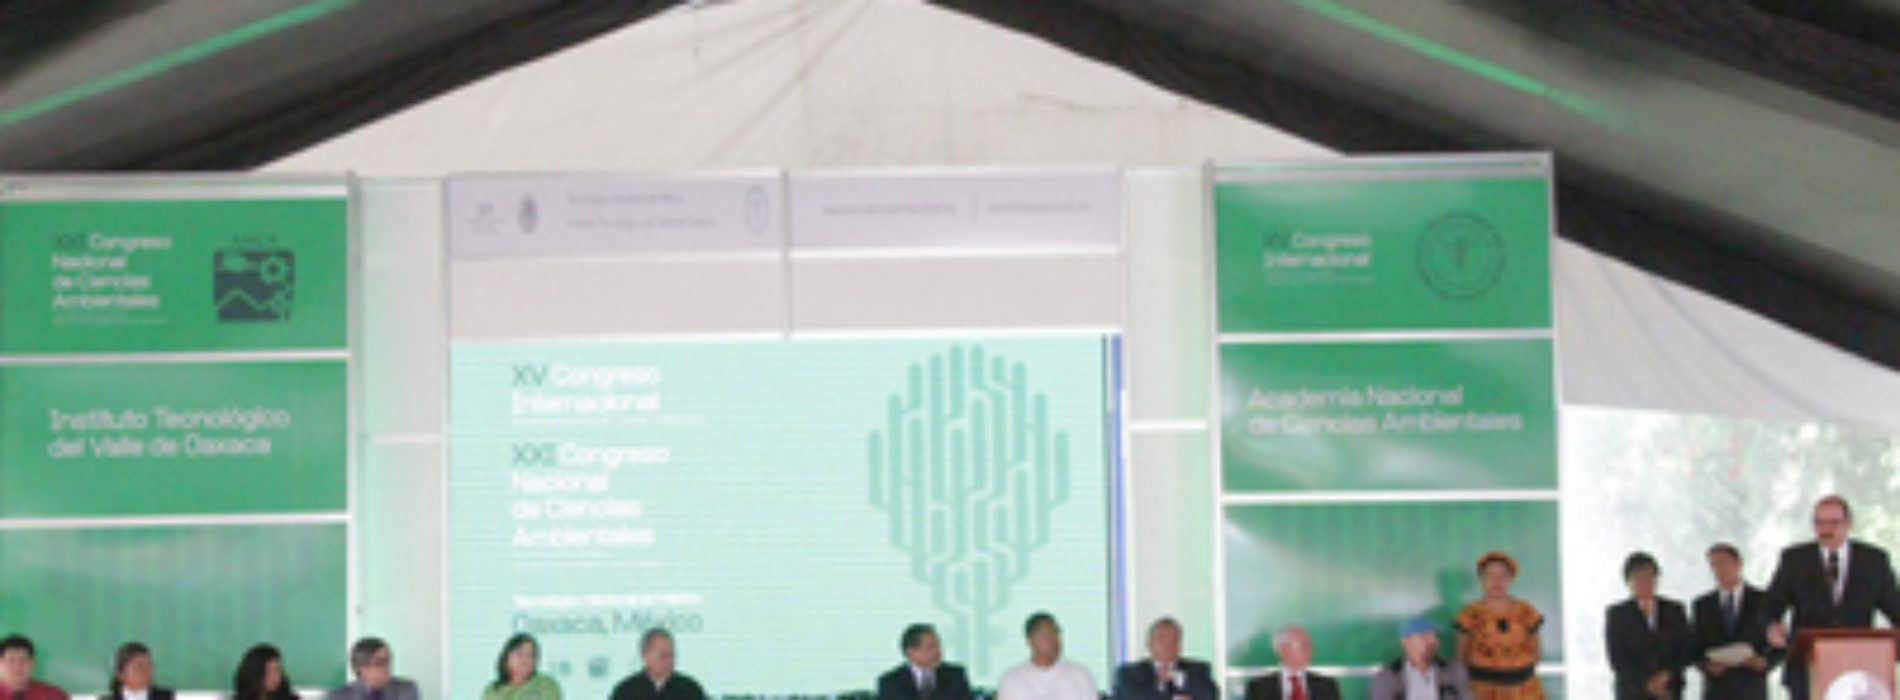 Oaxaca, sede del Congreso Internacional de Ciencias Ambientales